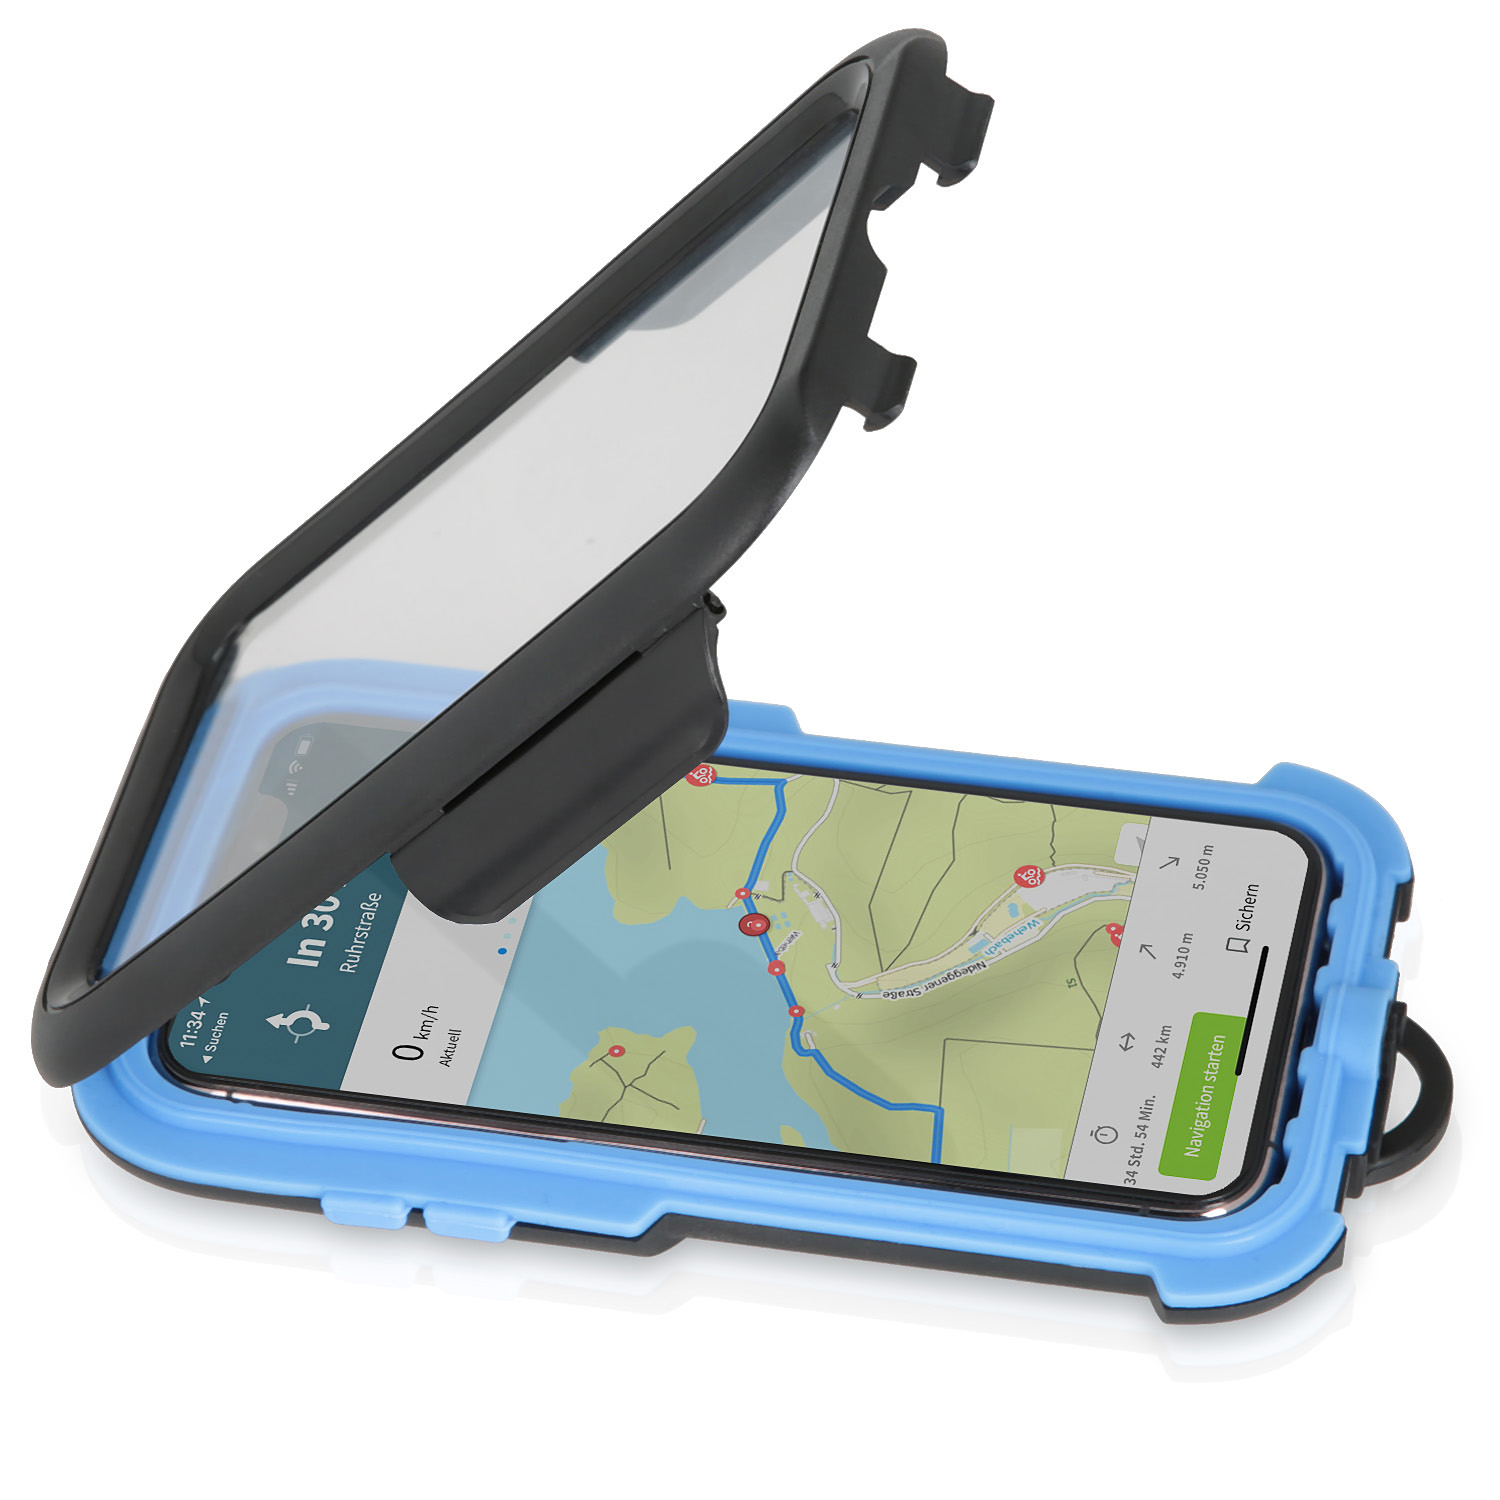 Apple Fahrradhalterung, CHILI WICKED 11 für Case Tour / wasserdichte iPhone XS Fahrradhalterung / Pro schwarz X